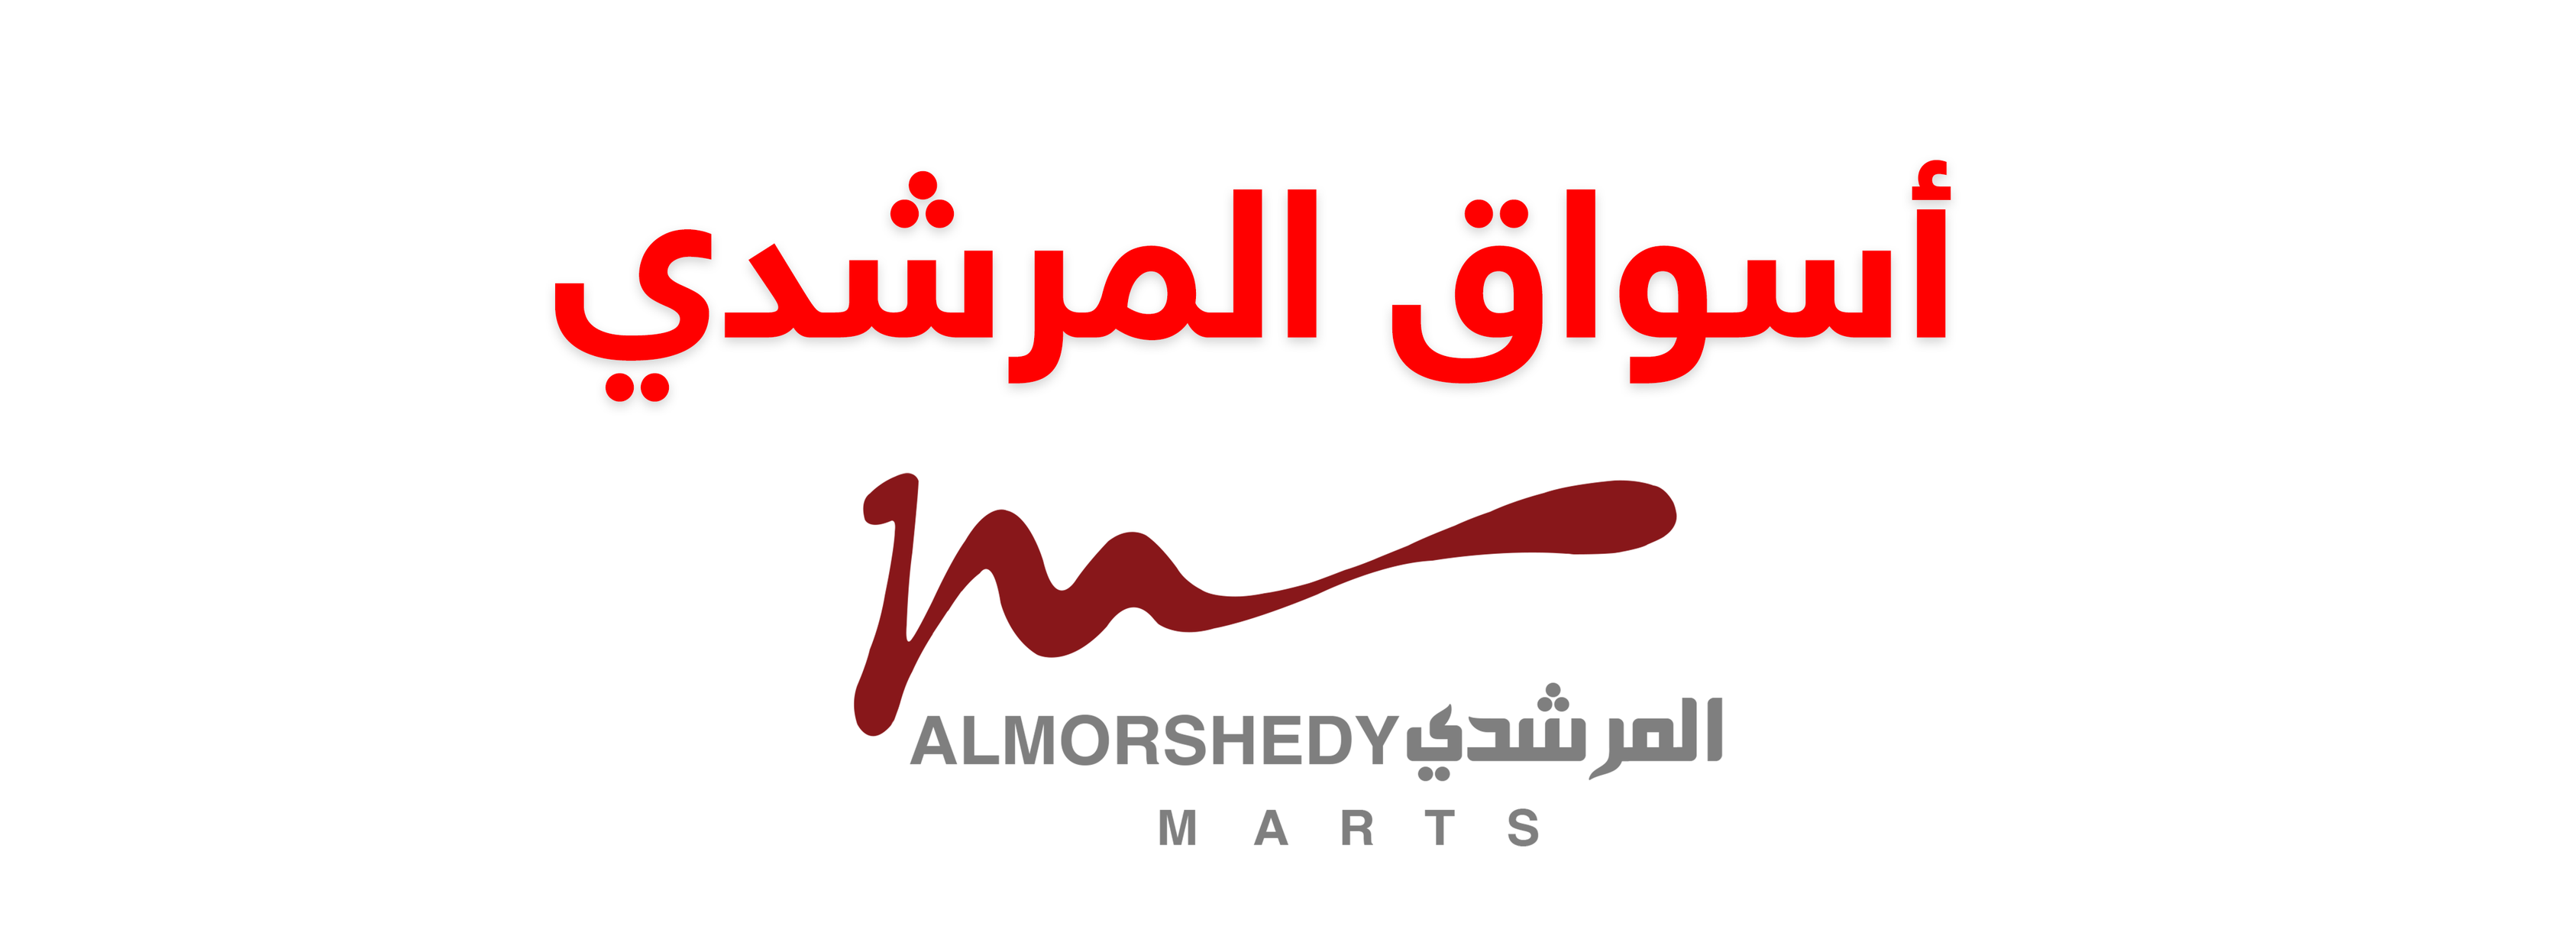 Al Morshedy